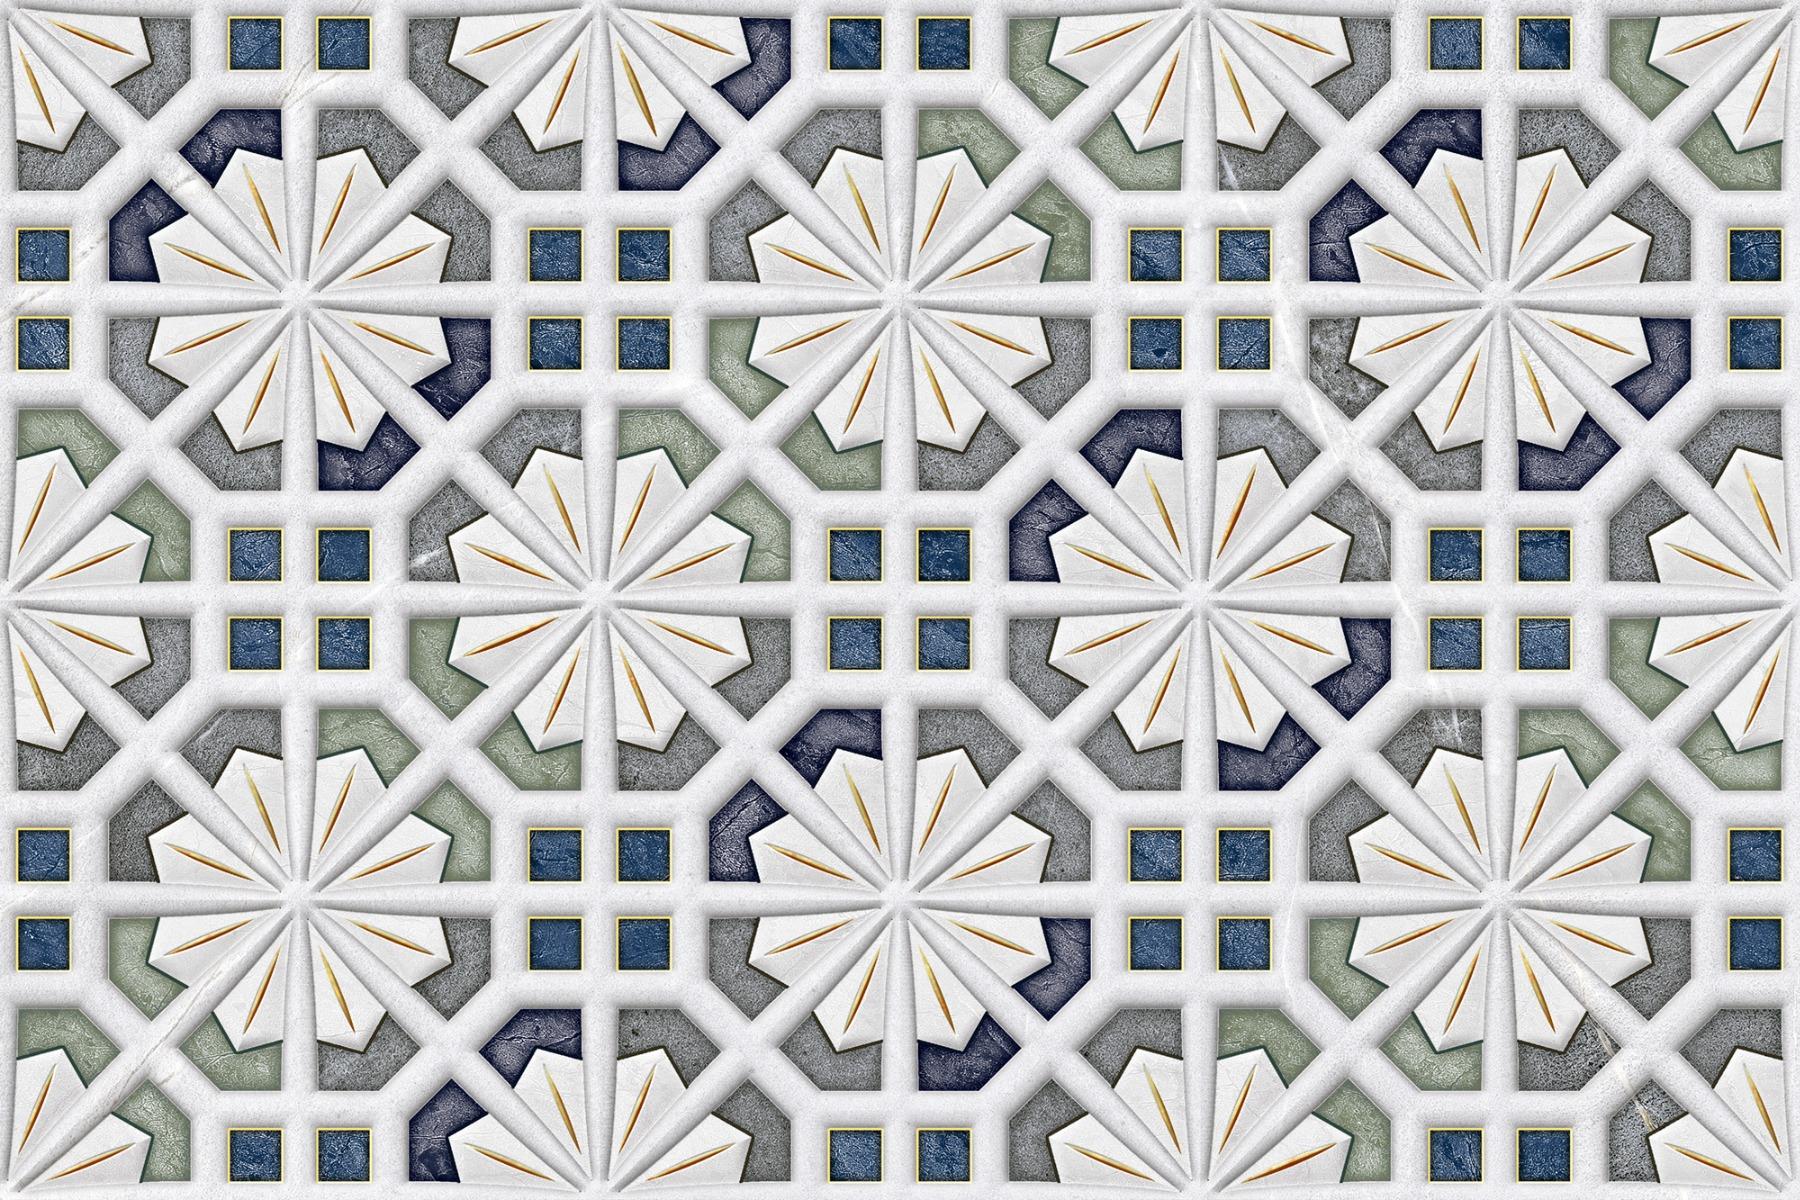 Digital Glazed Vitrified Tiles for Bathroom Tiles, Kitchen Tiles, Balcony Tiles